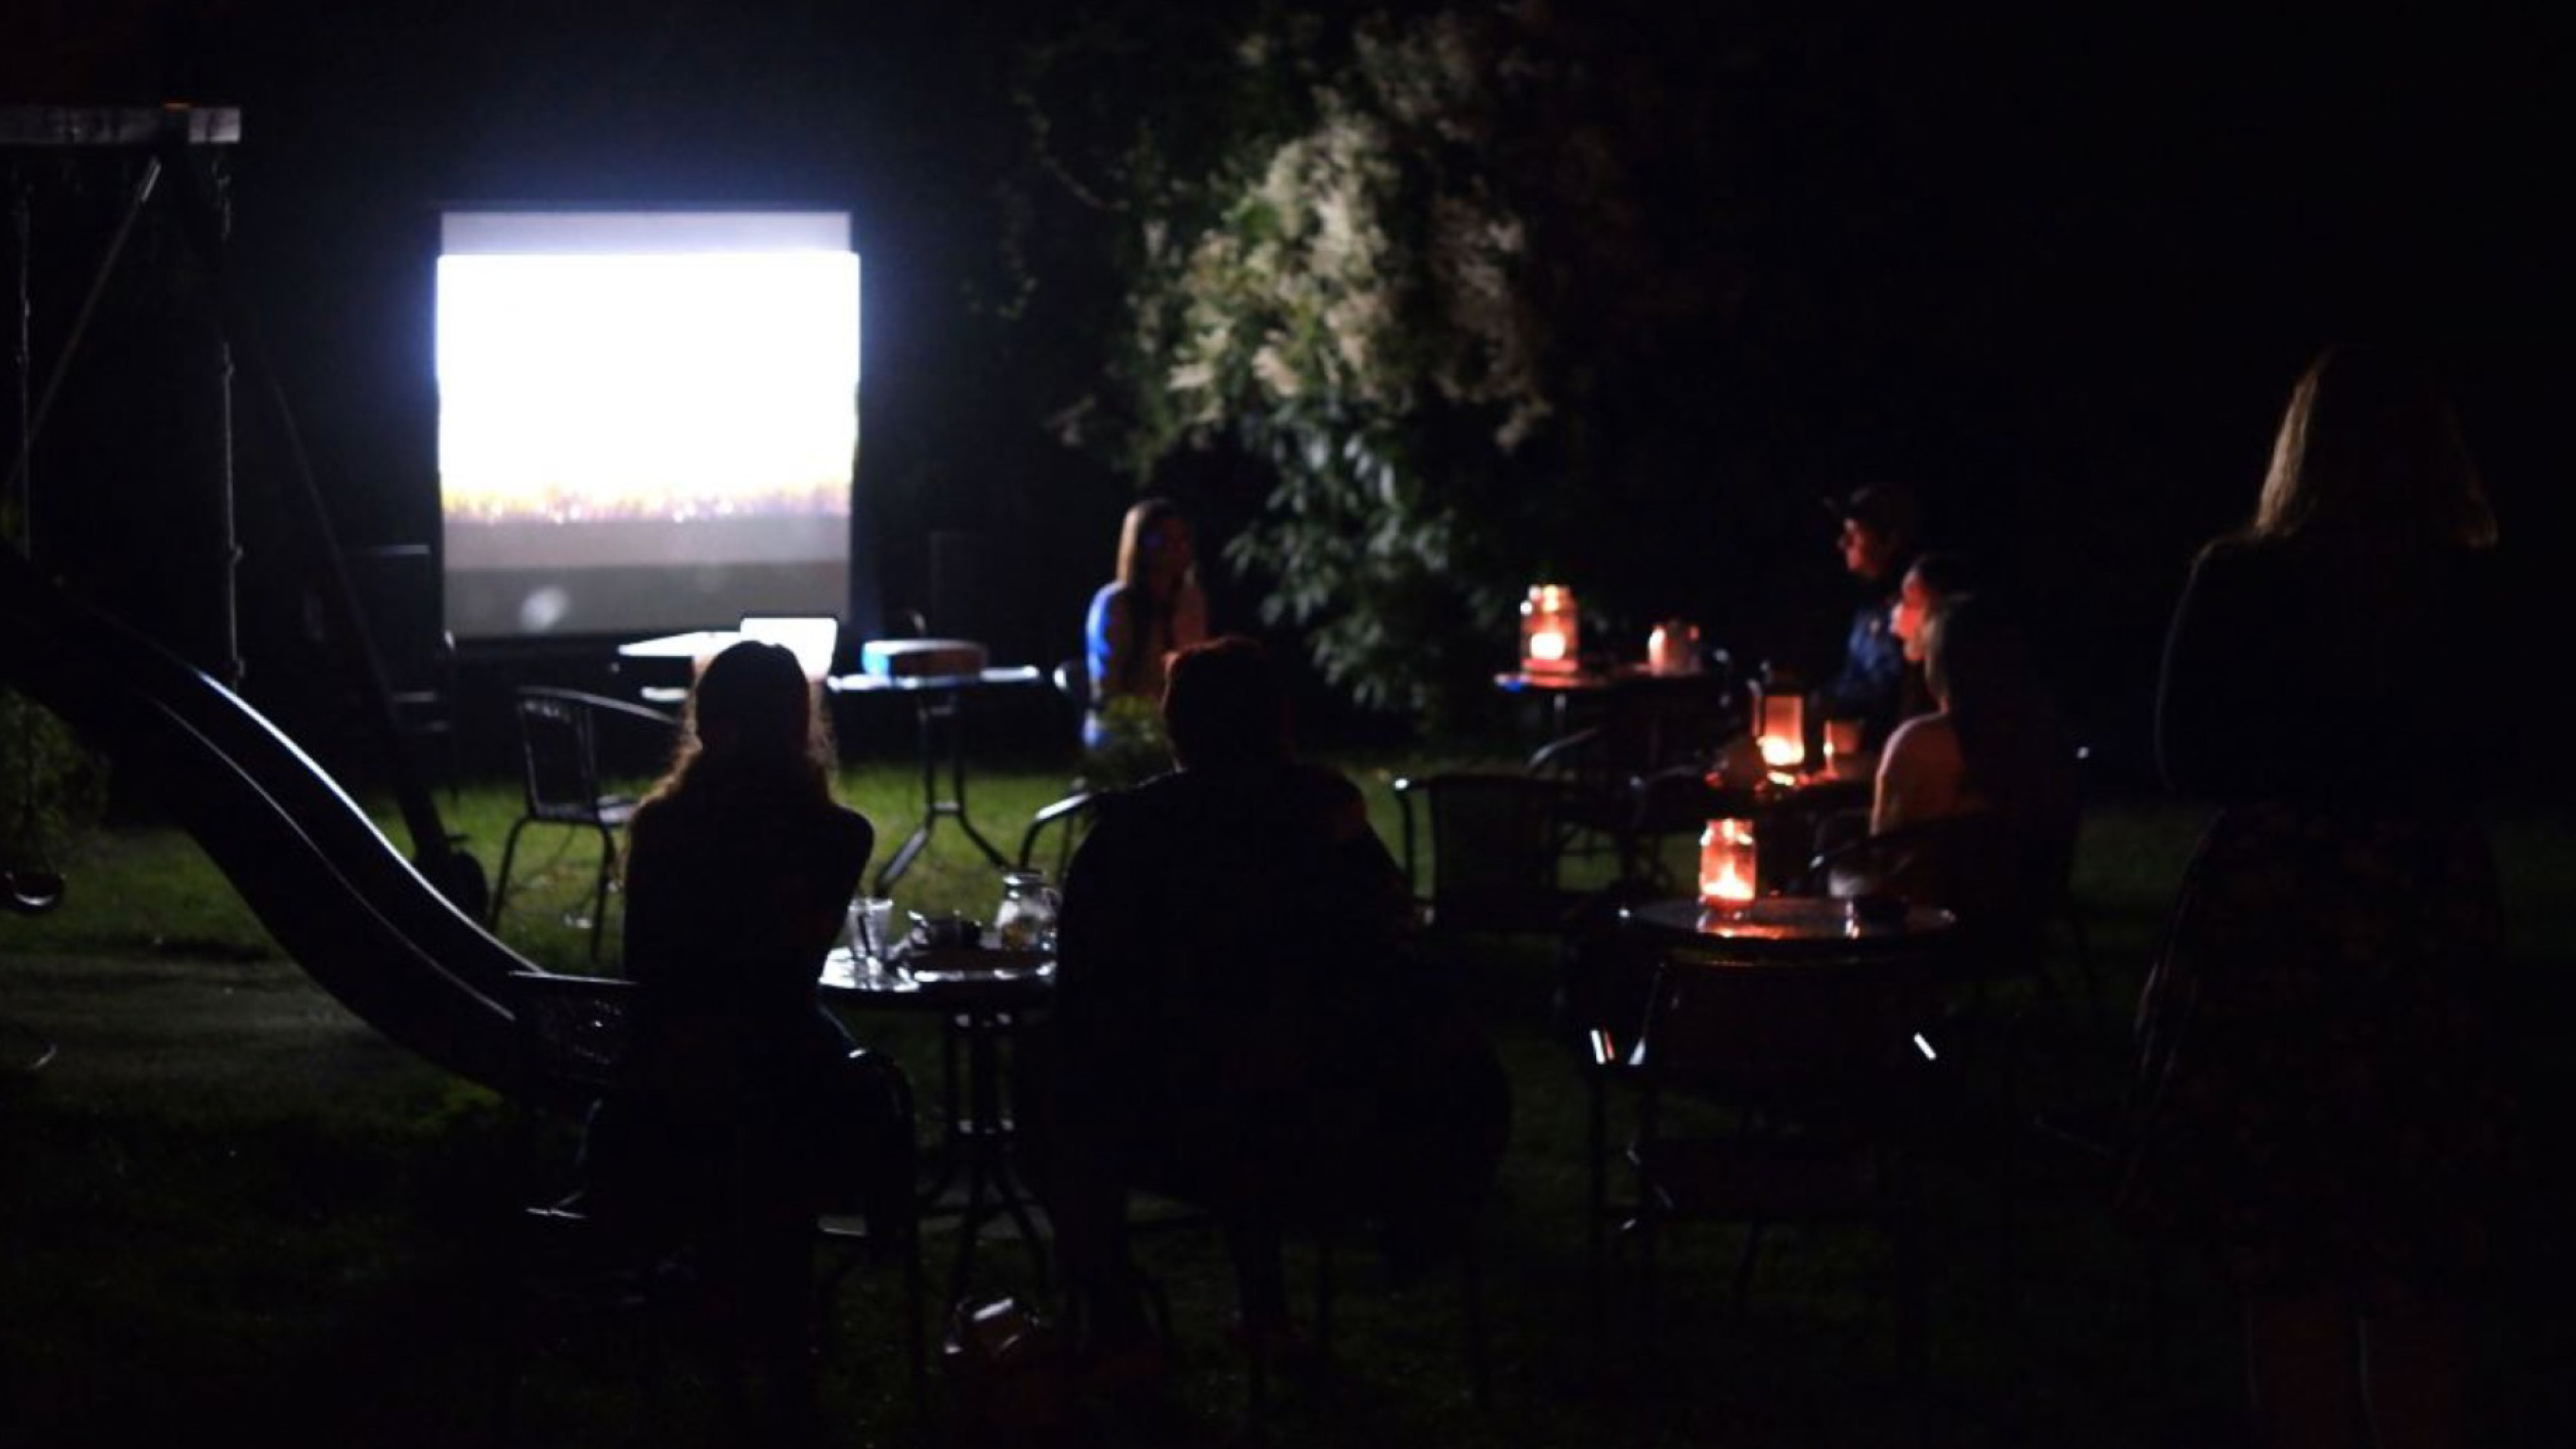 Promítání filmu večer na zahradě. Diváci sedí u stolečků se svíčkama.